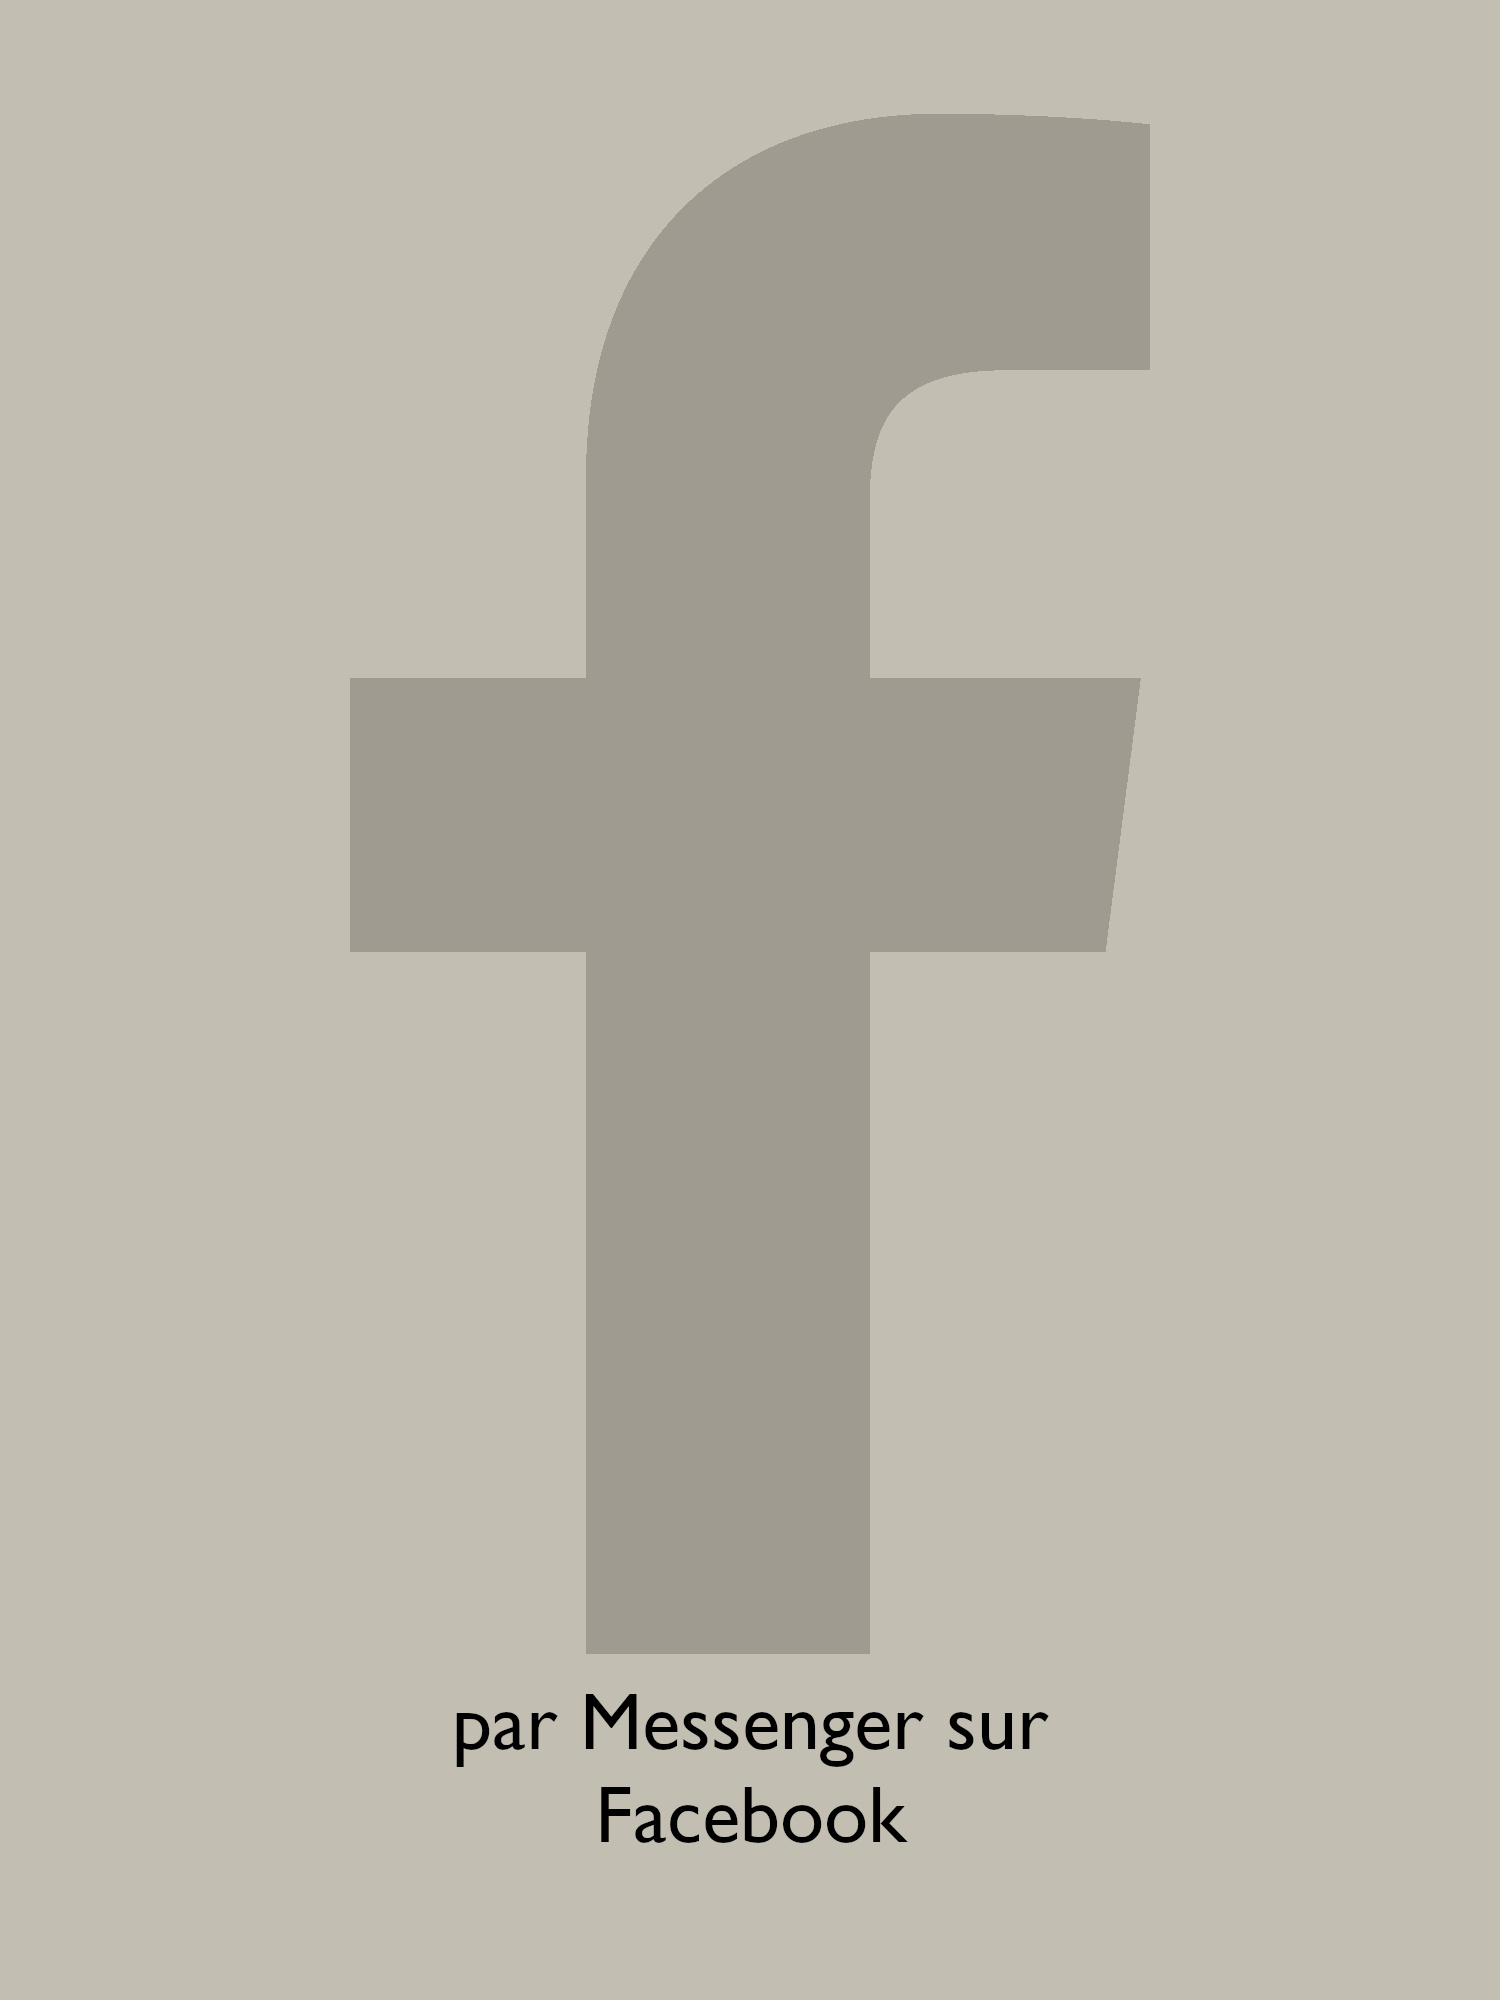 Contactez Franskaya au moyen du Messenger de Facebook en sélectionnant ce bouton